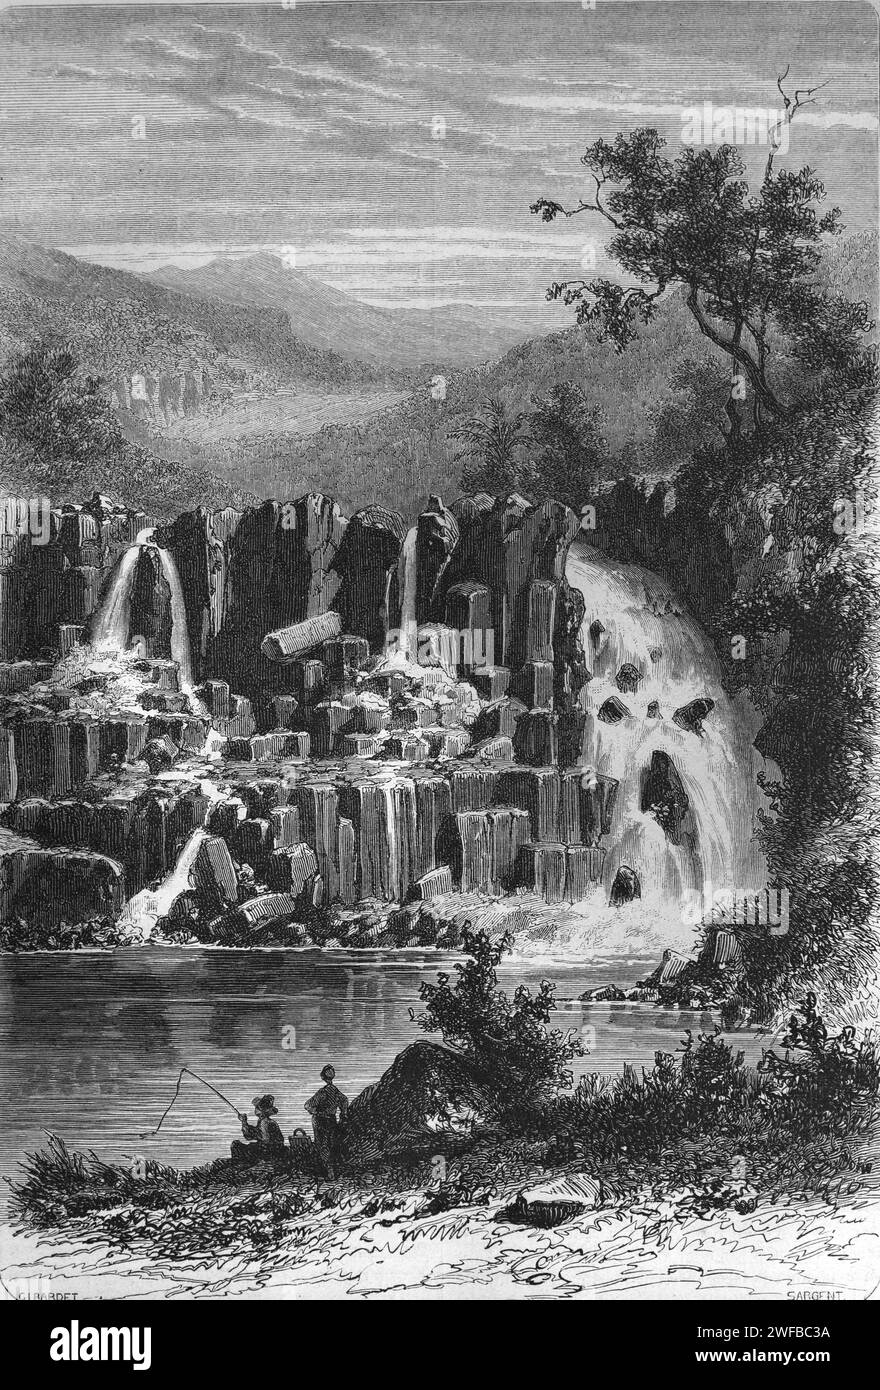 Rochester Falls Waterfall ou Cascade sur la rivière Savanne près de Souillac Maurice. Gravure ou illustration vintage ou historique Banque D'Images